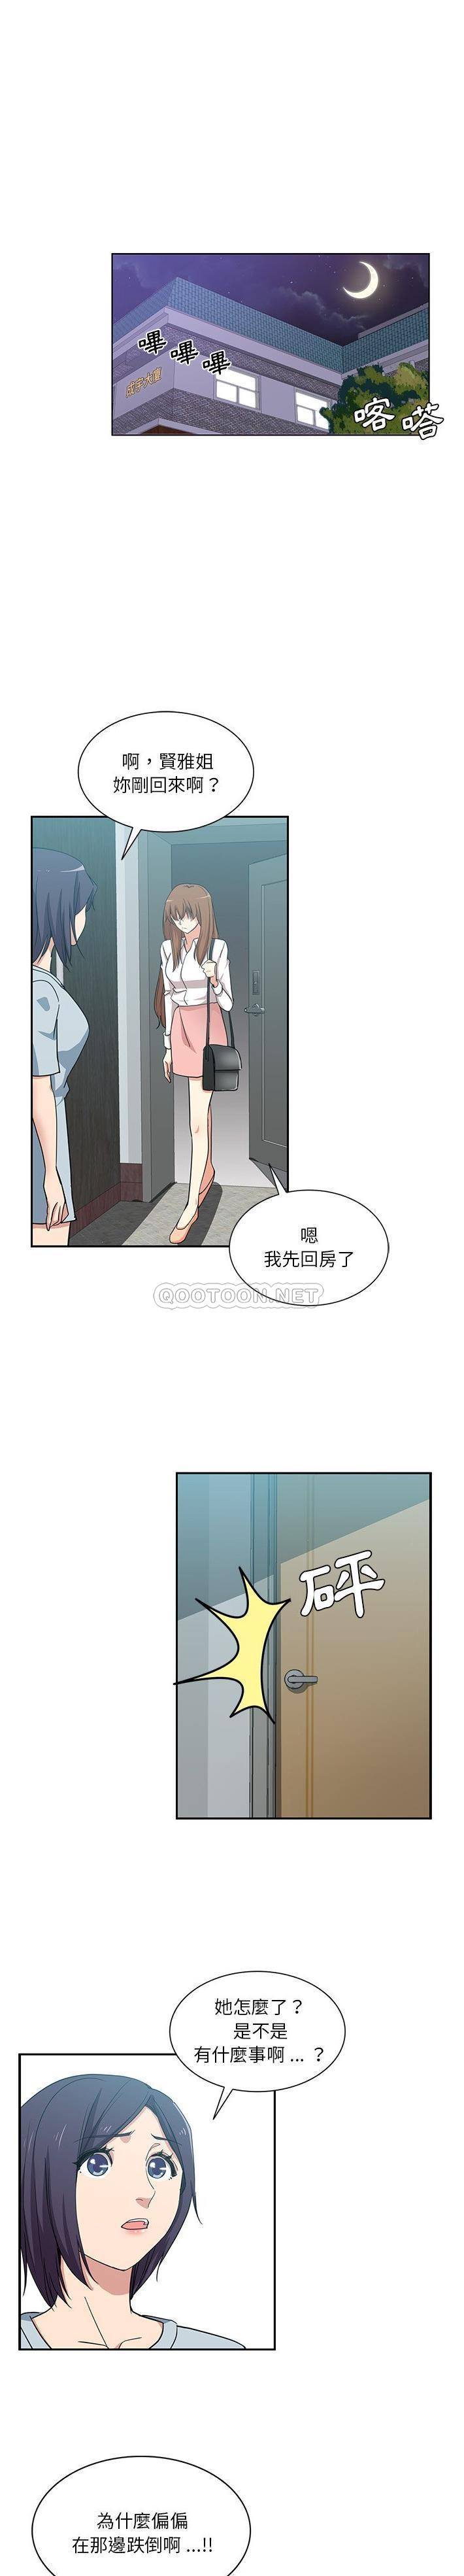 韩国污漫画 危險純友誼 第14话 8